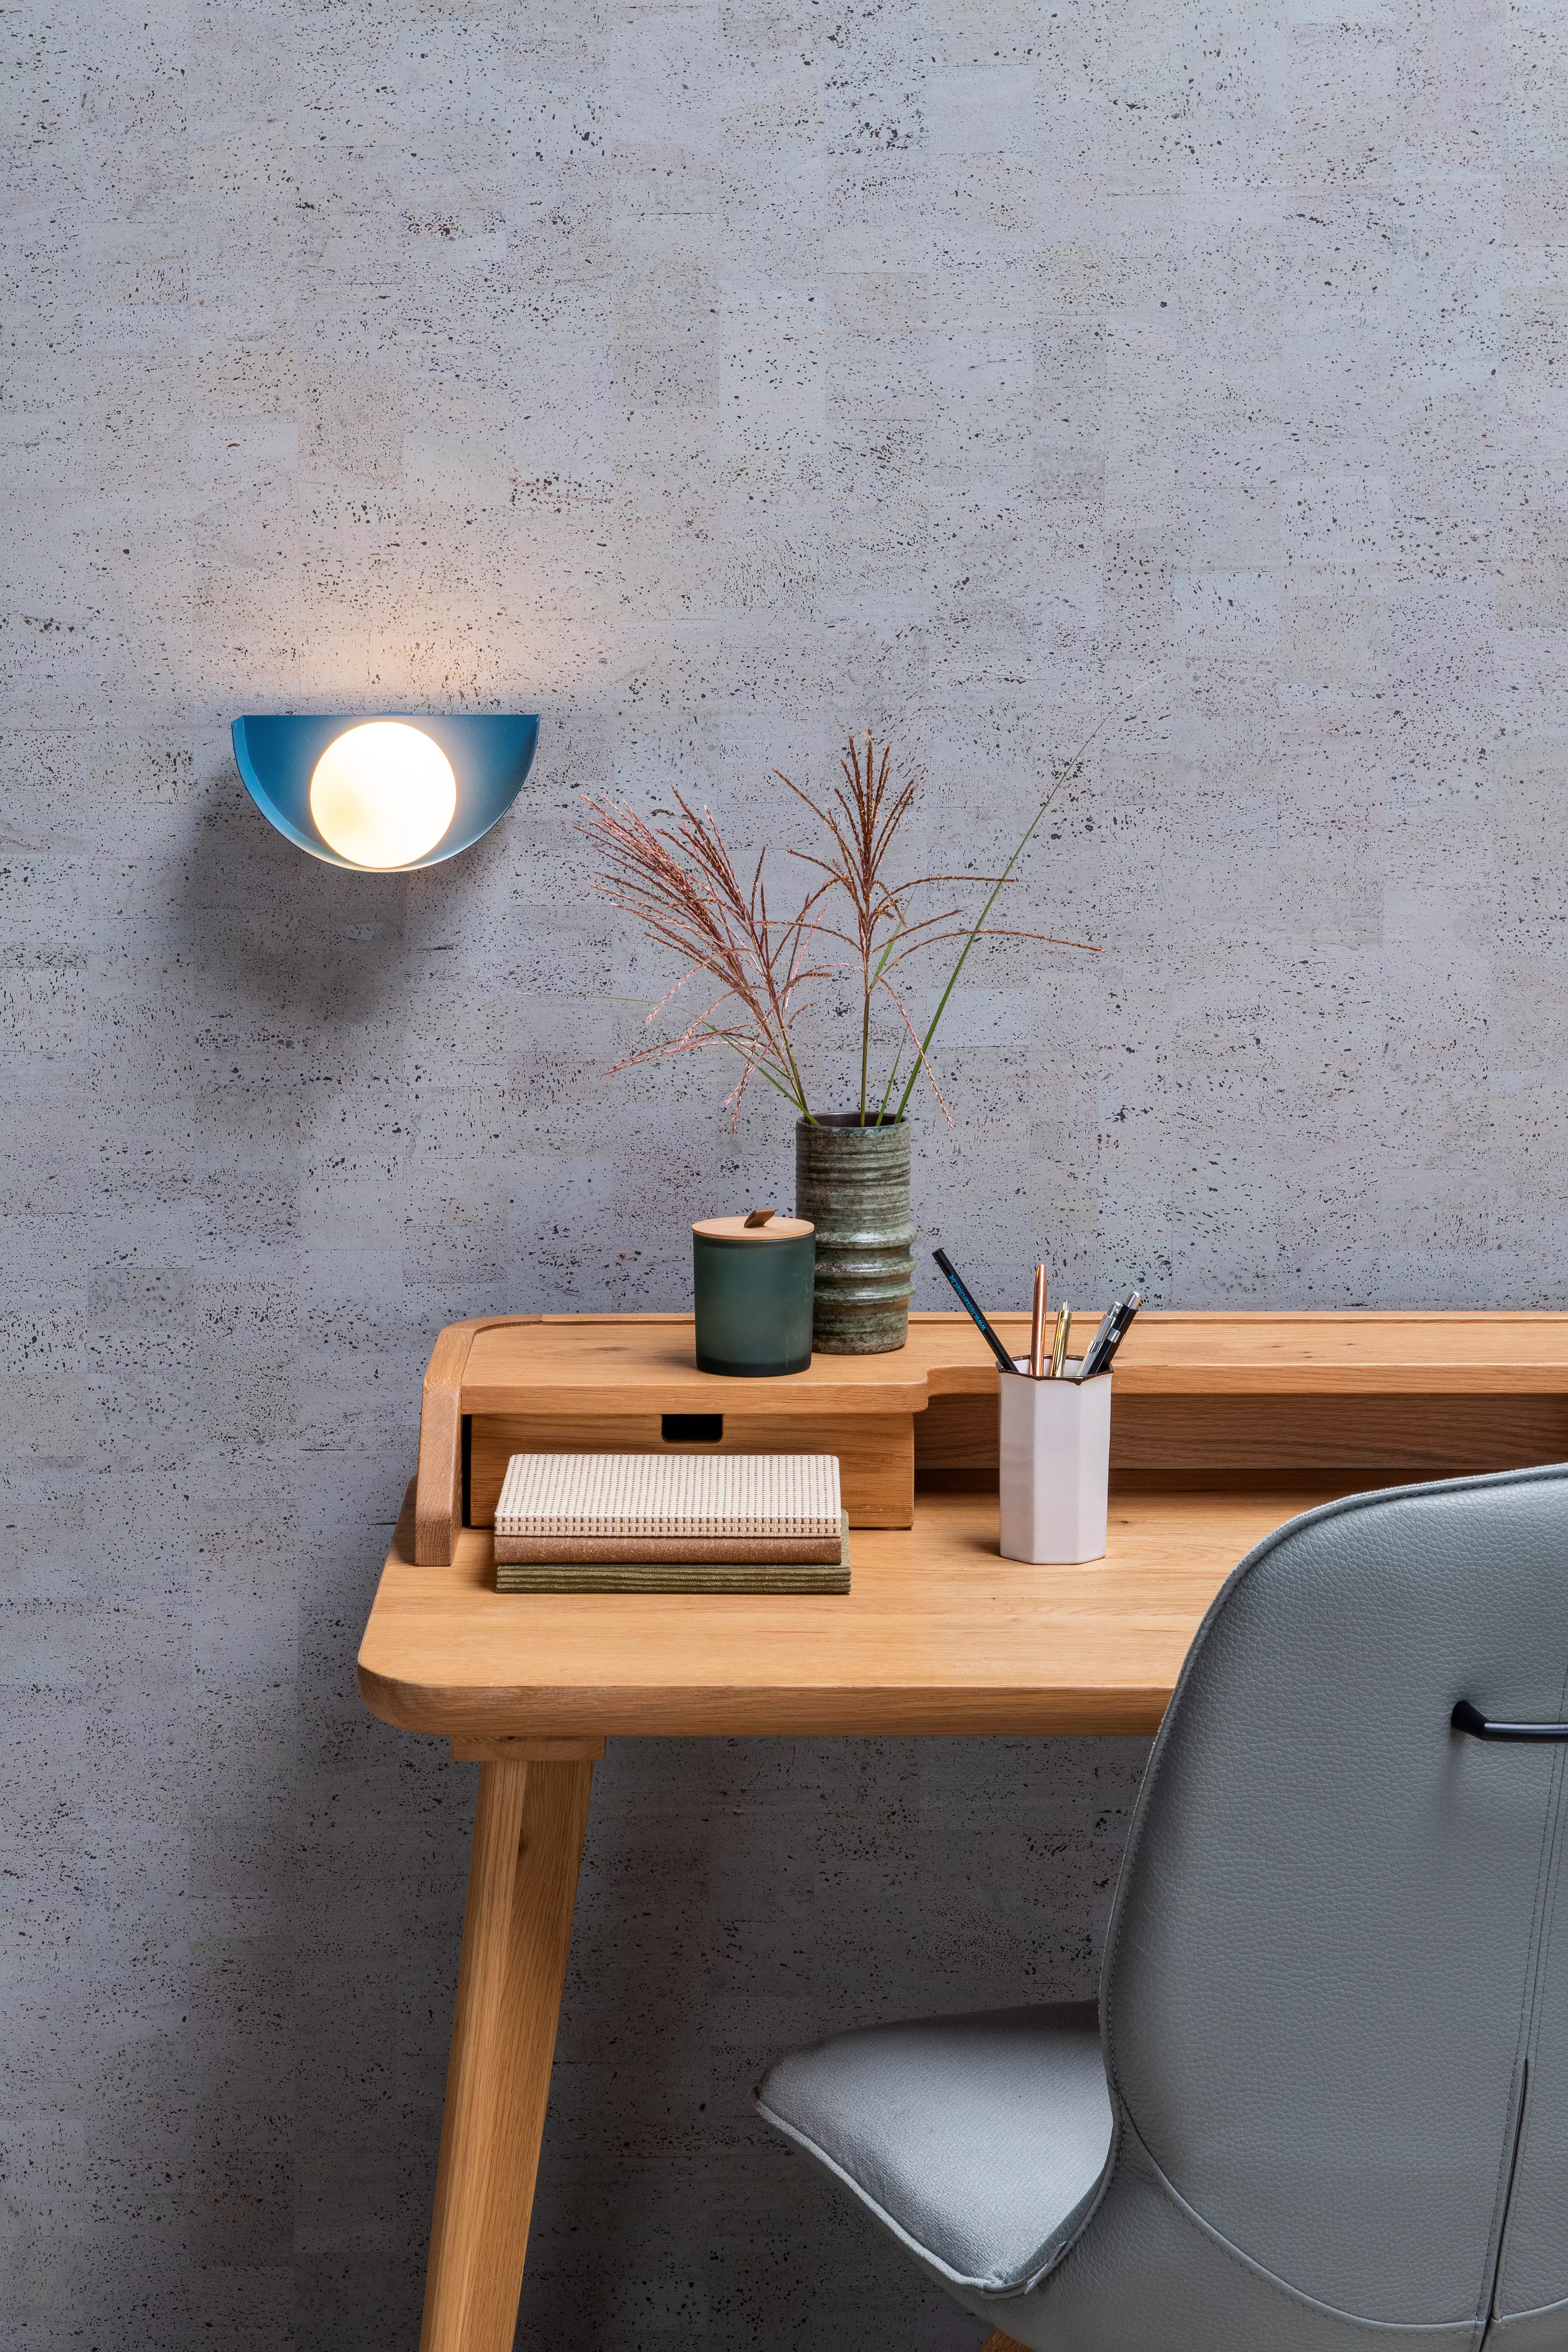 Dekorativní nástěnná lampa Benni v modré barvě dodá světlo vaší ložnici, obývacímu pokoji nebo chodbě.